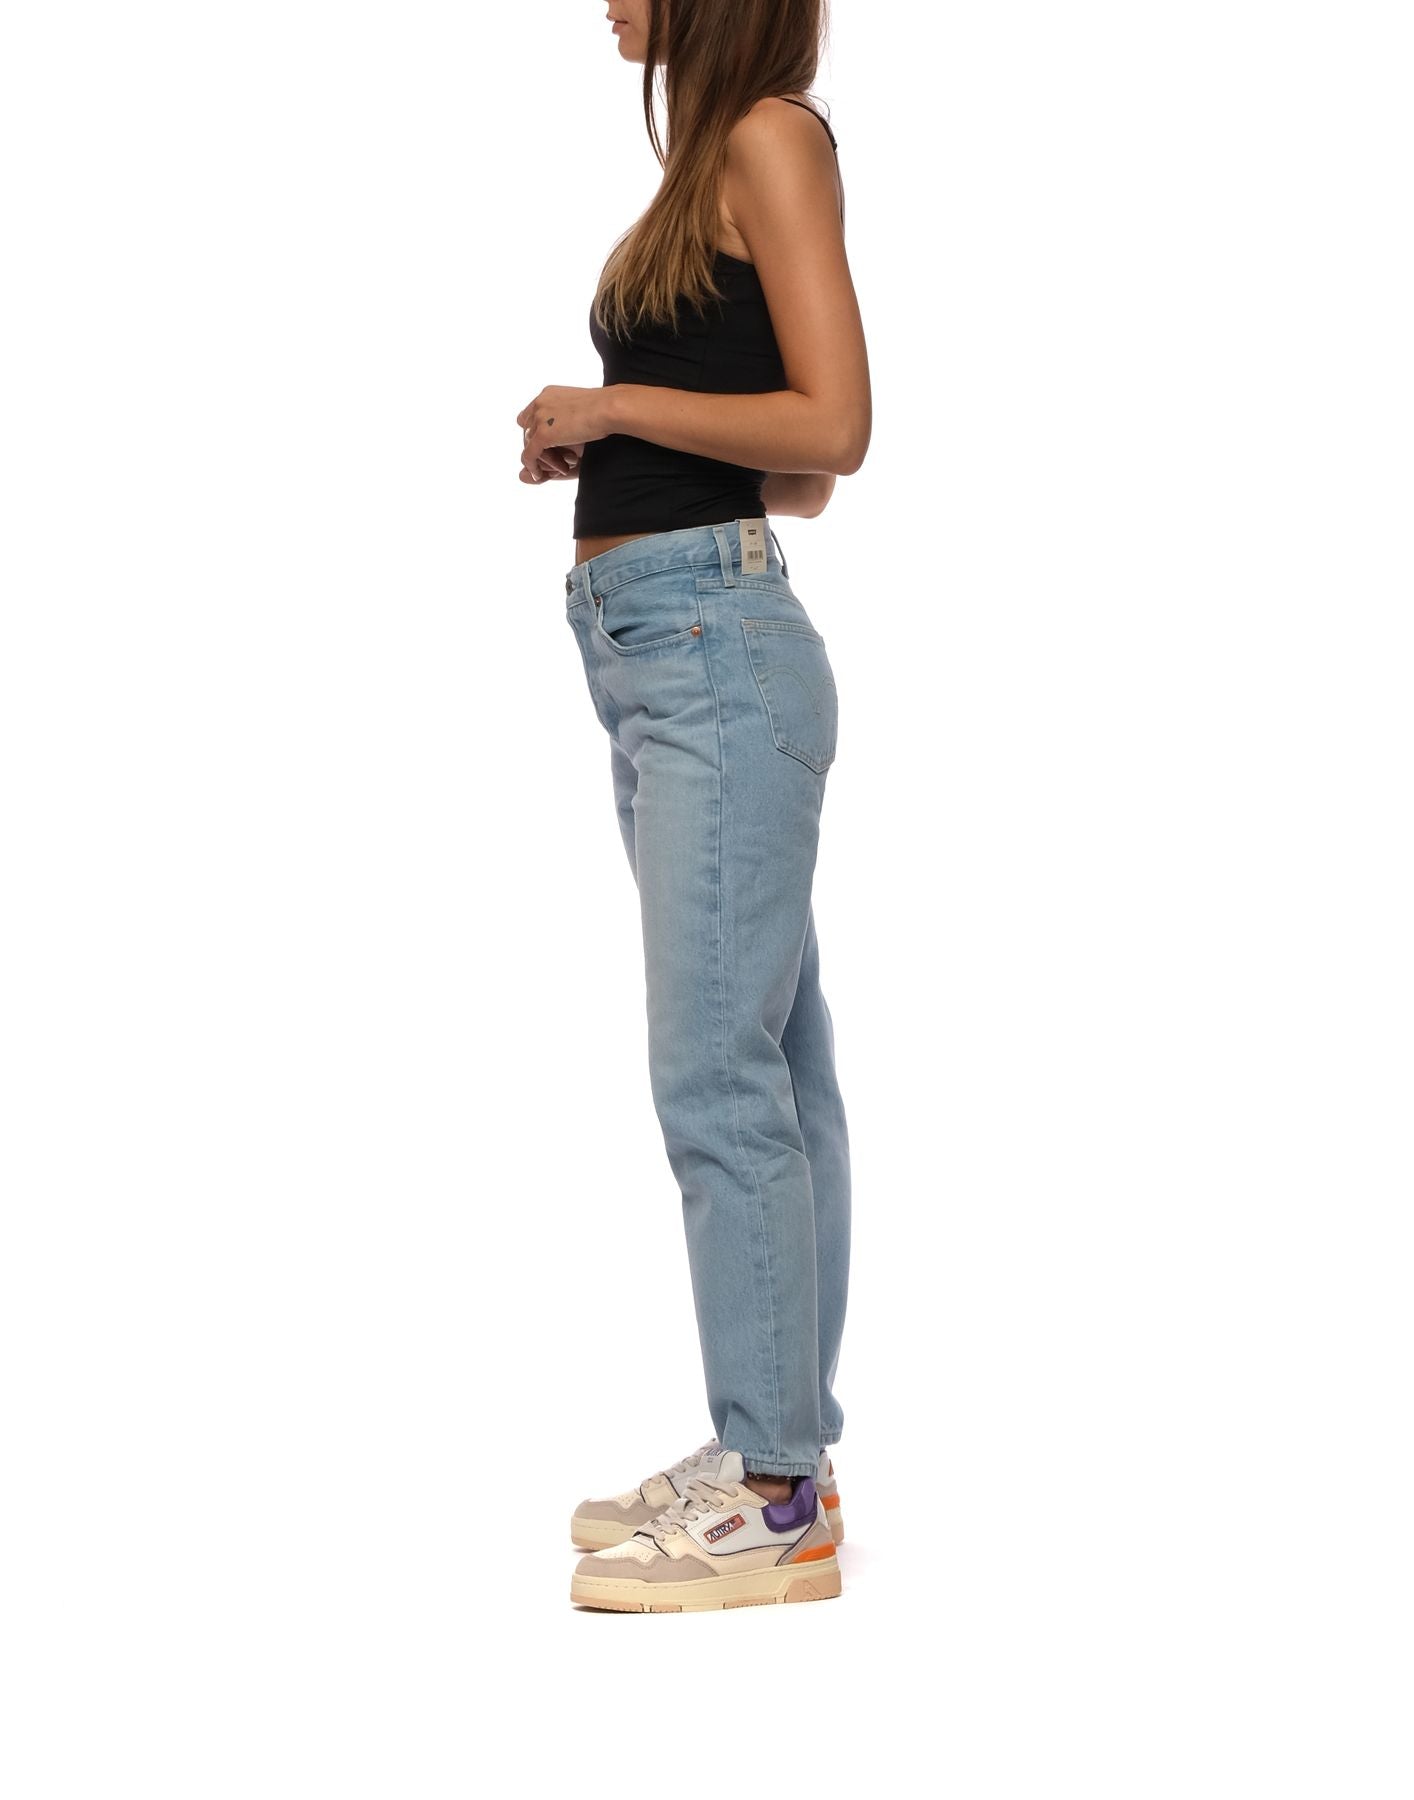 Jeans para mujer 36200 0124 Ojai Luxor Levi's